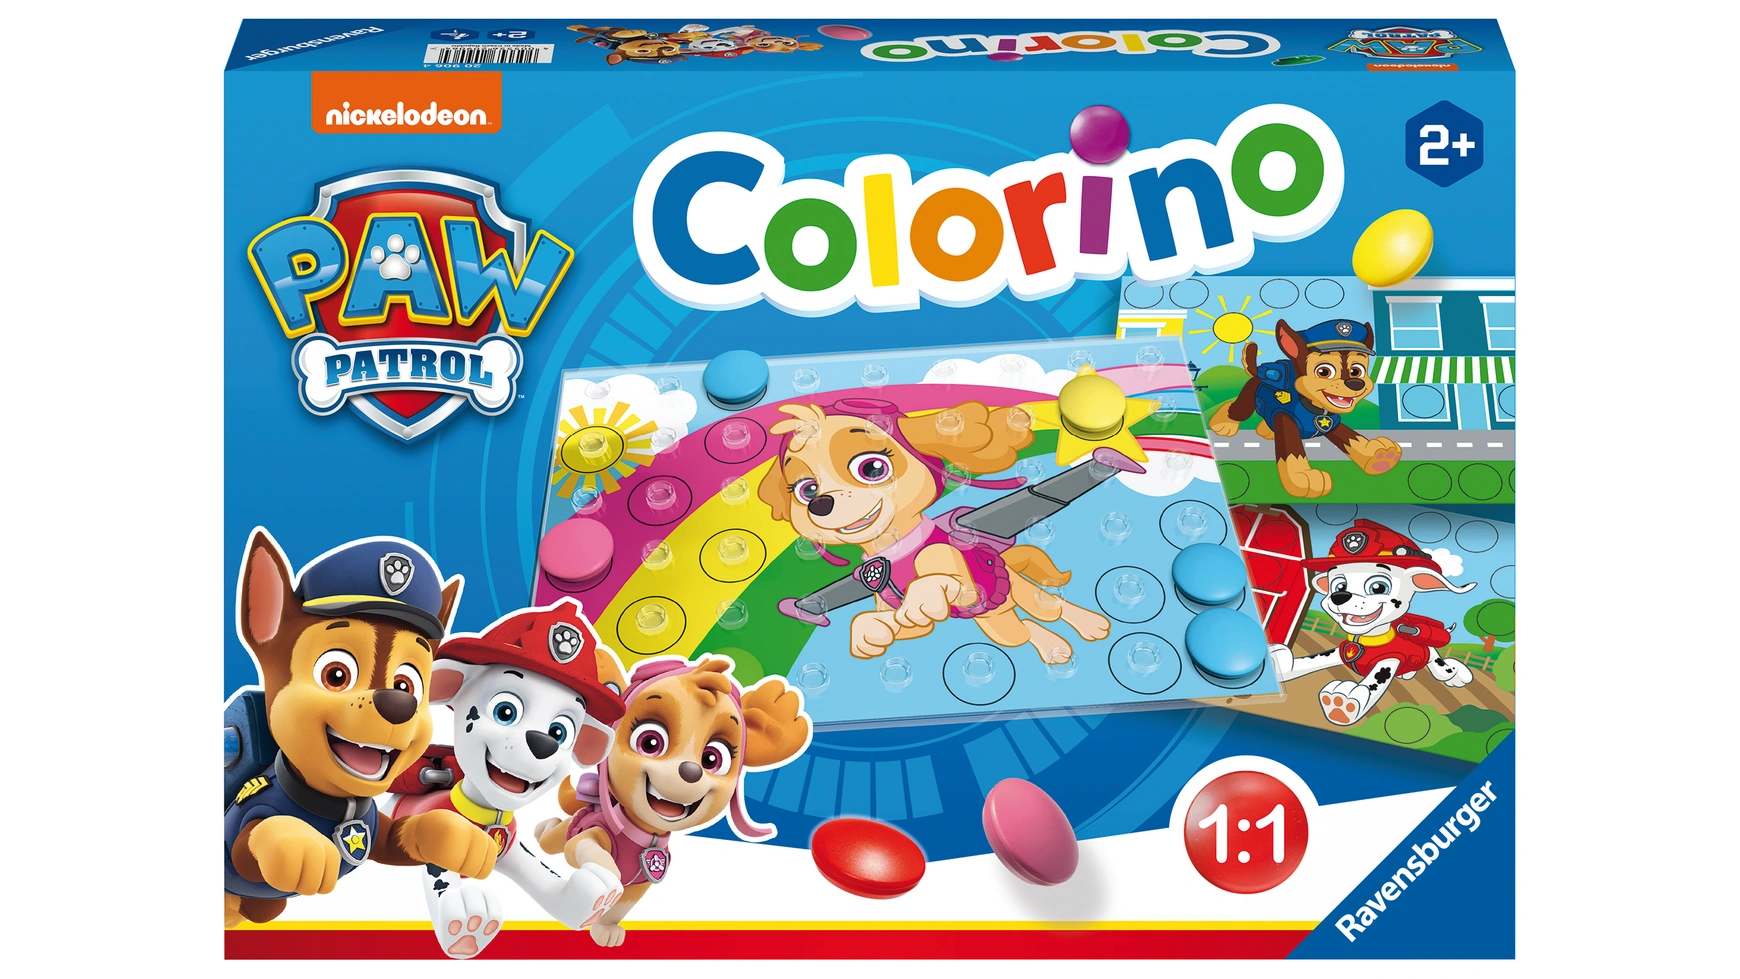 цена Ravensburger Spiele Щенячий Патруль Колорино, детская игра для изучения цветов, игра-мозаика, плагин, от 2 лет